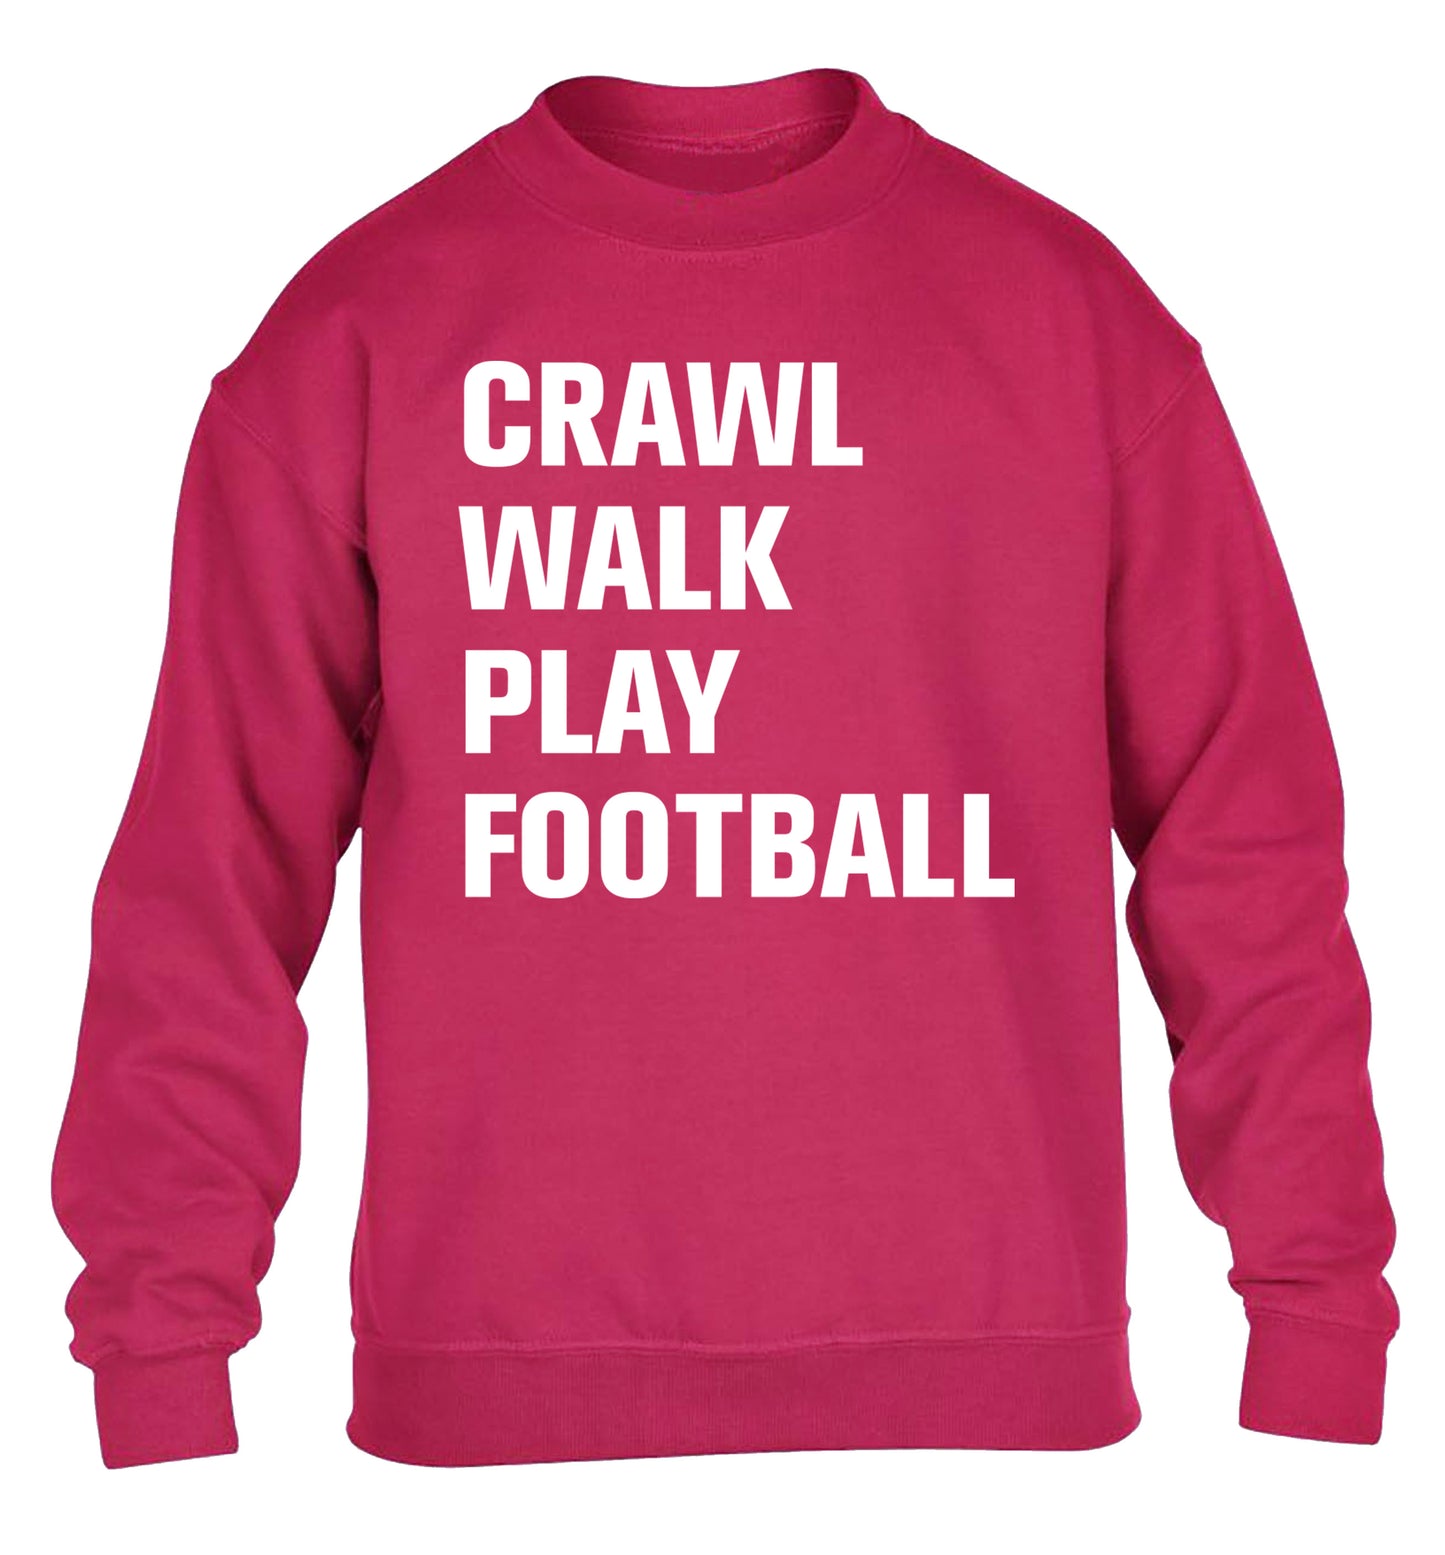 Crawl, walk, play football children's pink sweater 12-13 Years